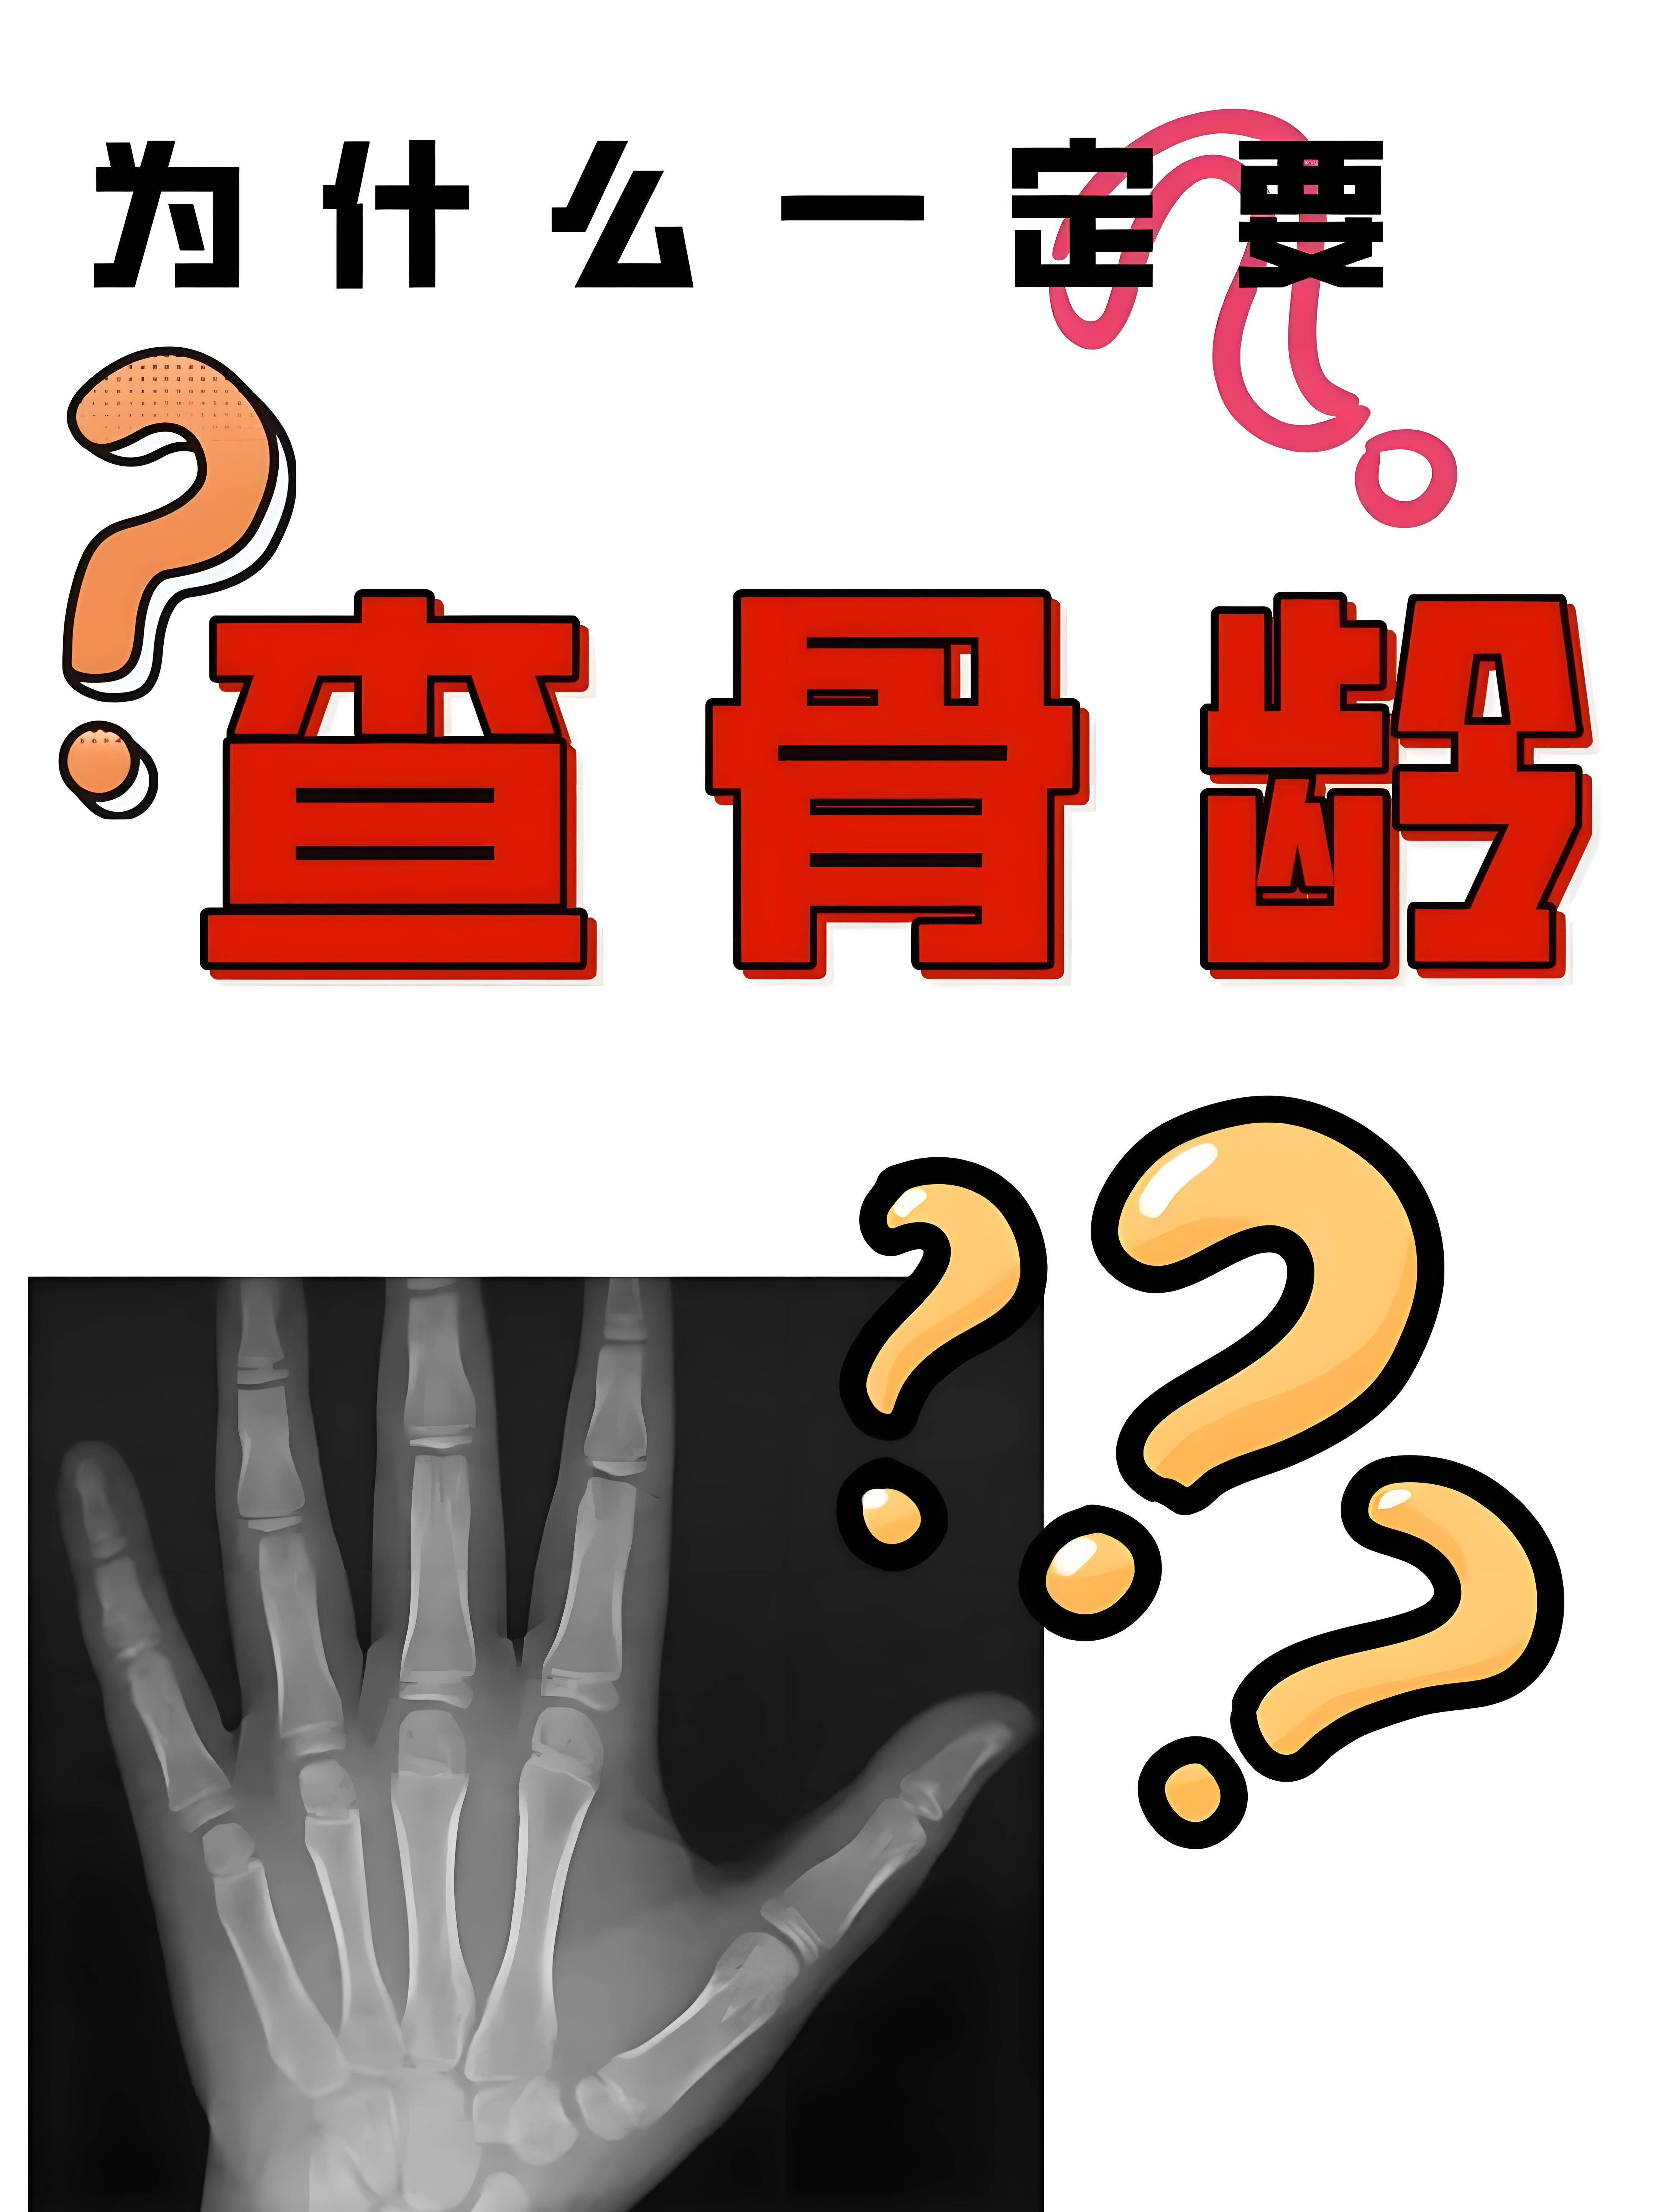 骨龄检测,即骨骼年龄测定,是通过拍摄左手手腕部位的x光片,观察骨化